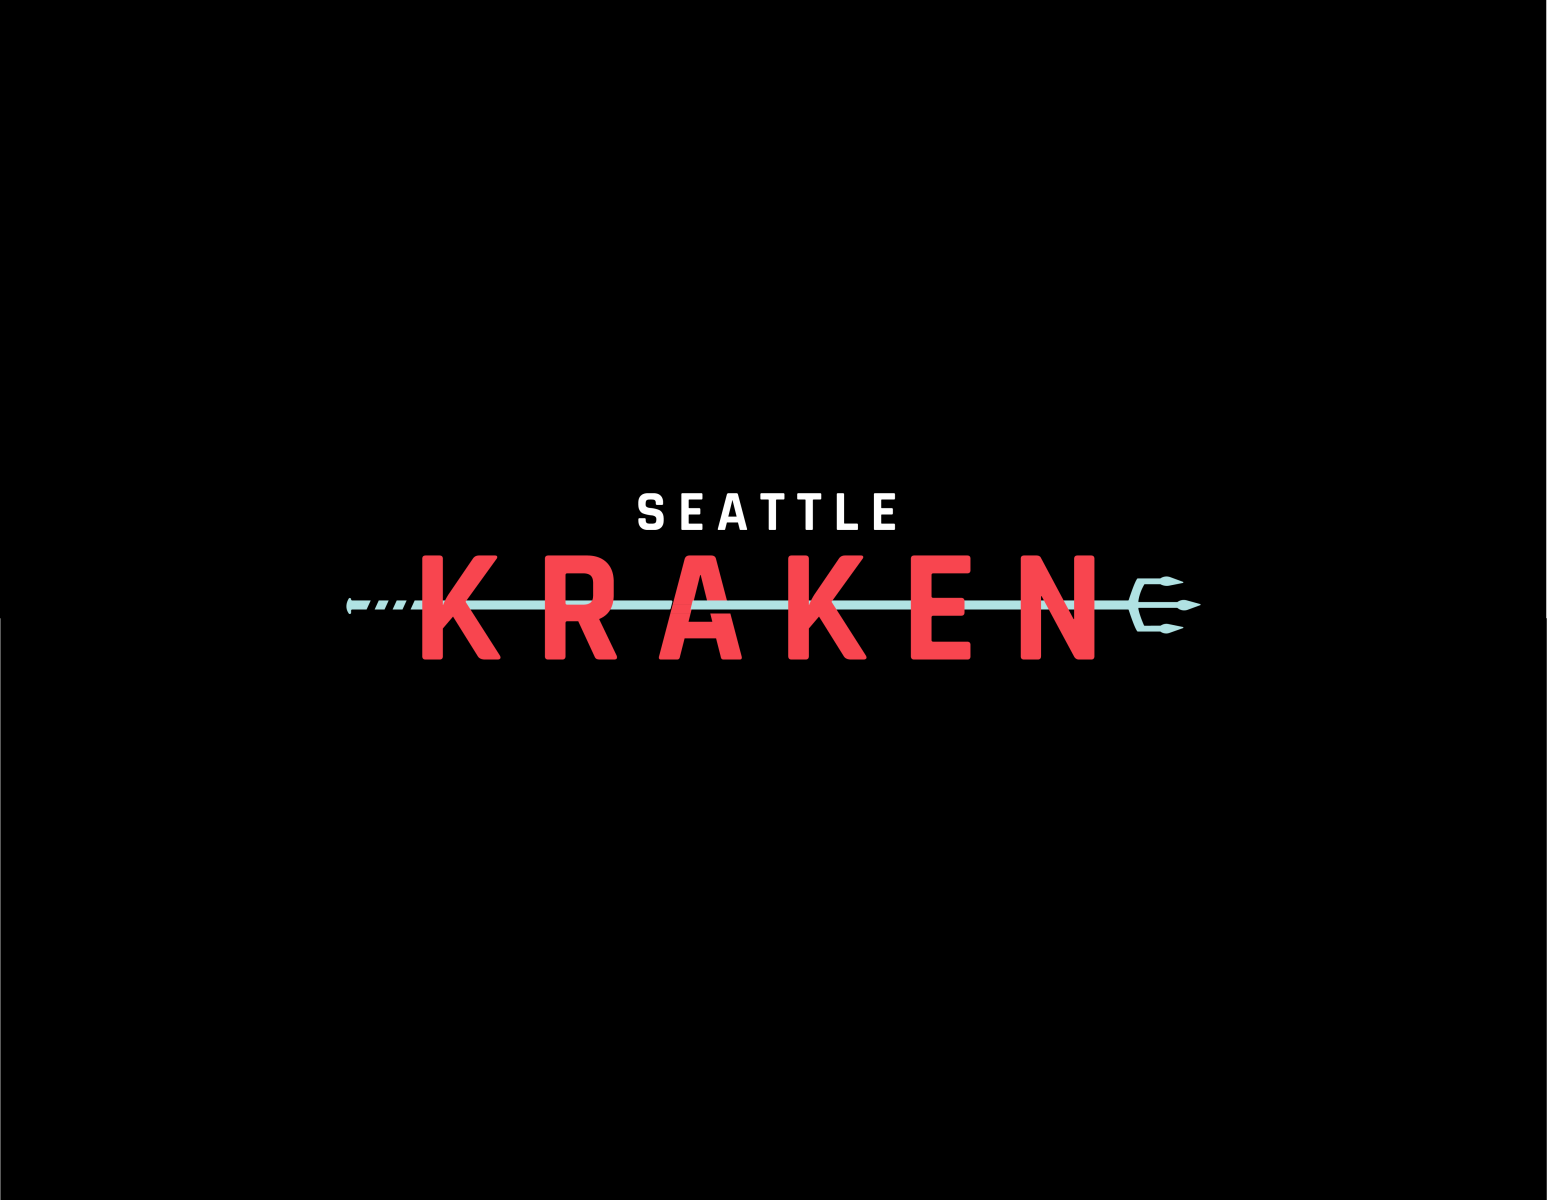 Seattle Kraken by Tim Steele Allen on Dribbble